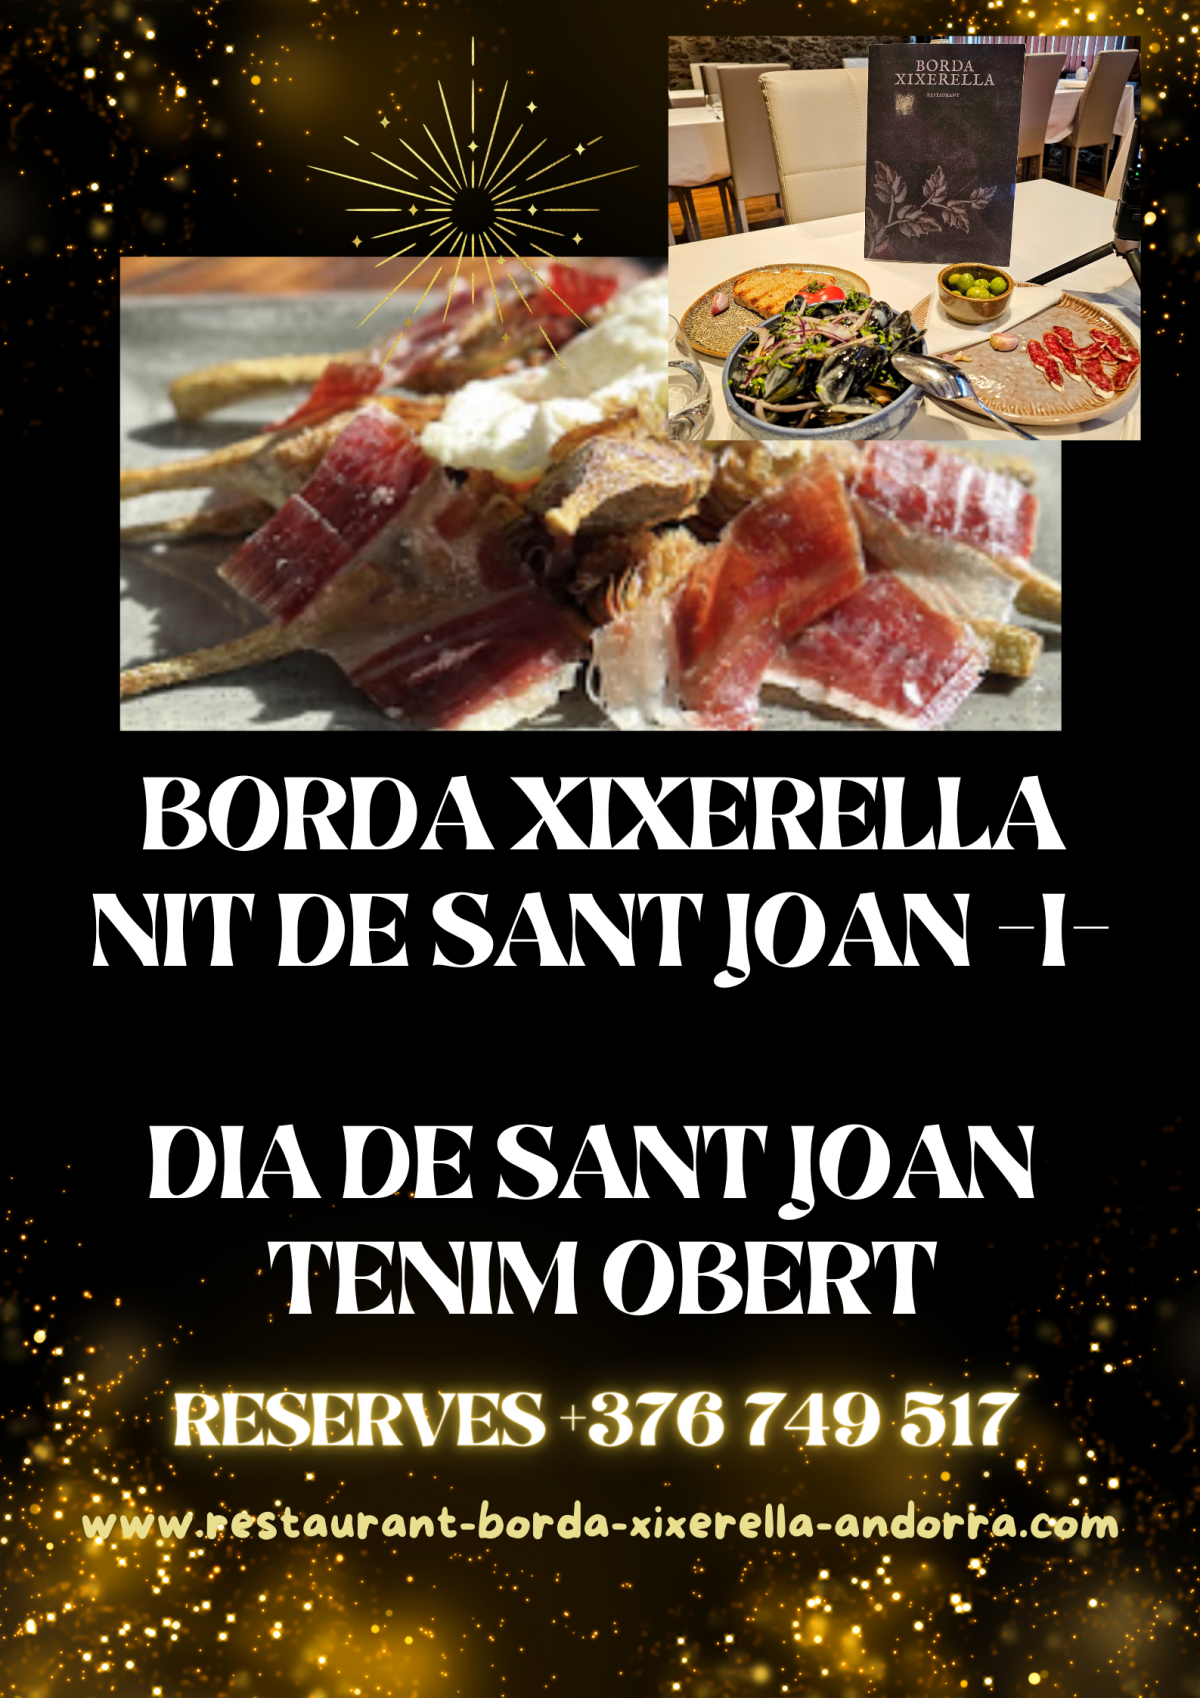 Borda Xixerella, oberts per Sant Joan dilluns dia 24 de juny. També celebrem la revetlla de Sant Joan la nit del 23. 🎉🔥T.+376749517